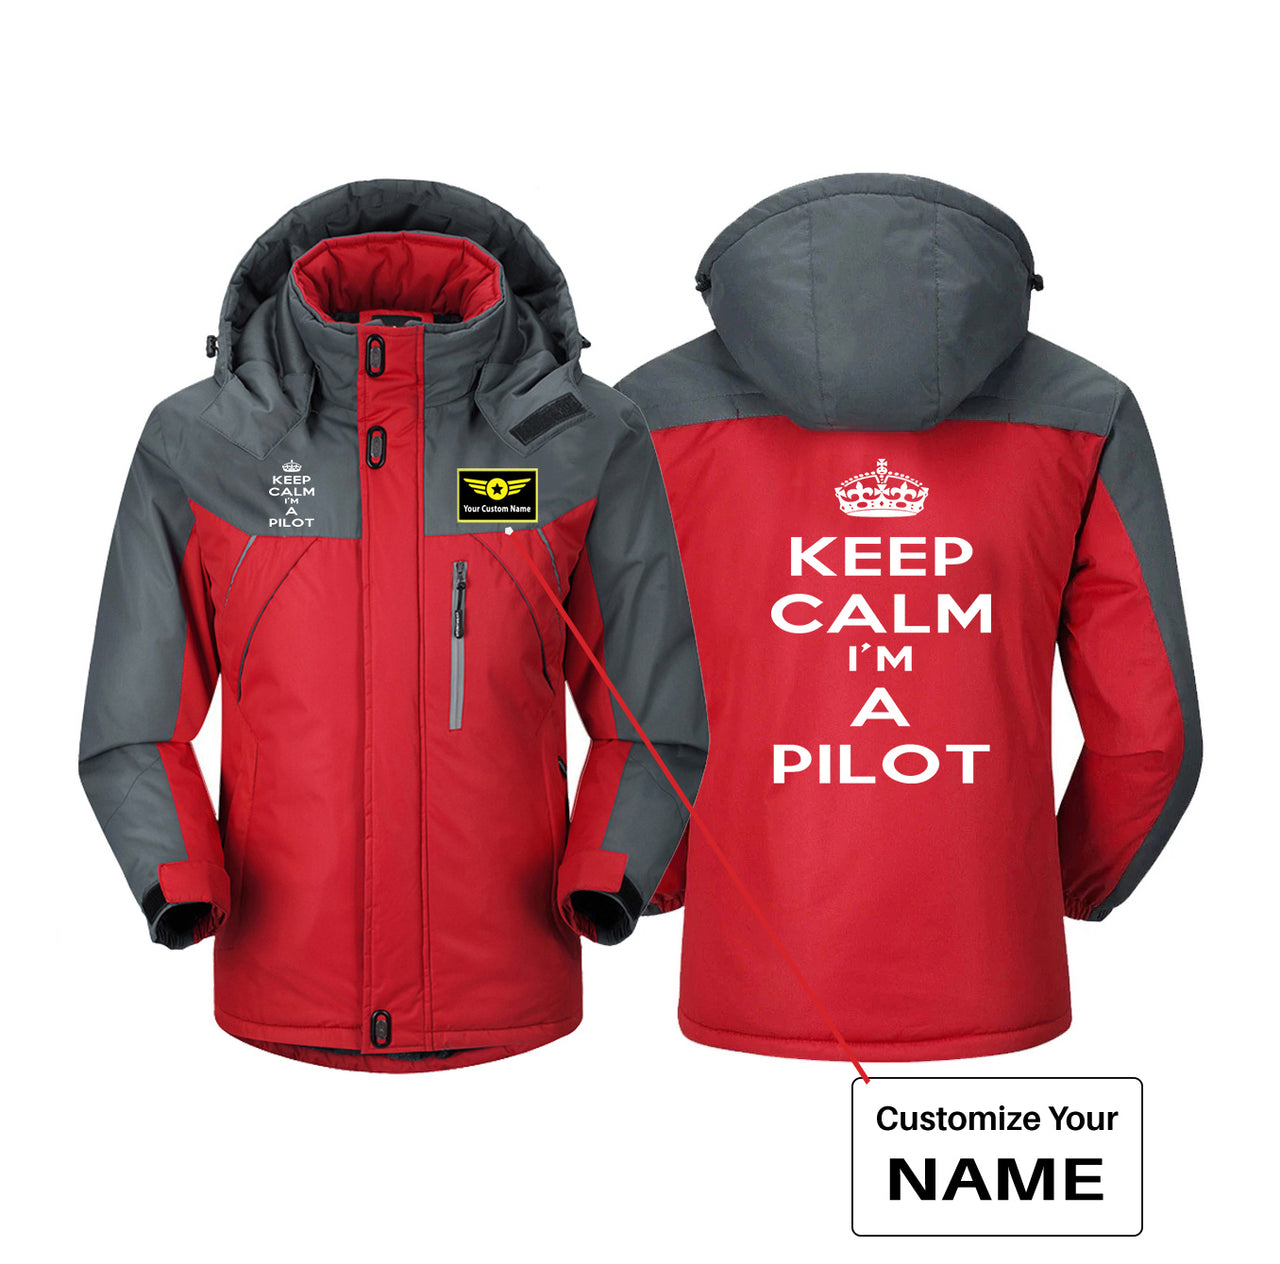 Keep Calm I'm a Pilot Designed Thick Winter Jackets